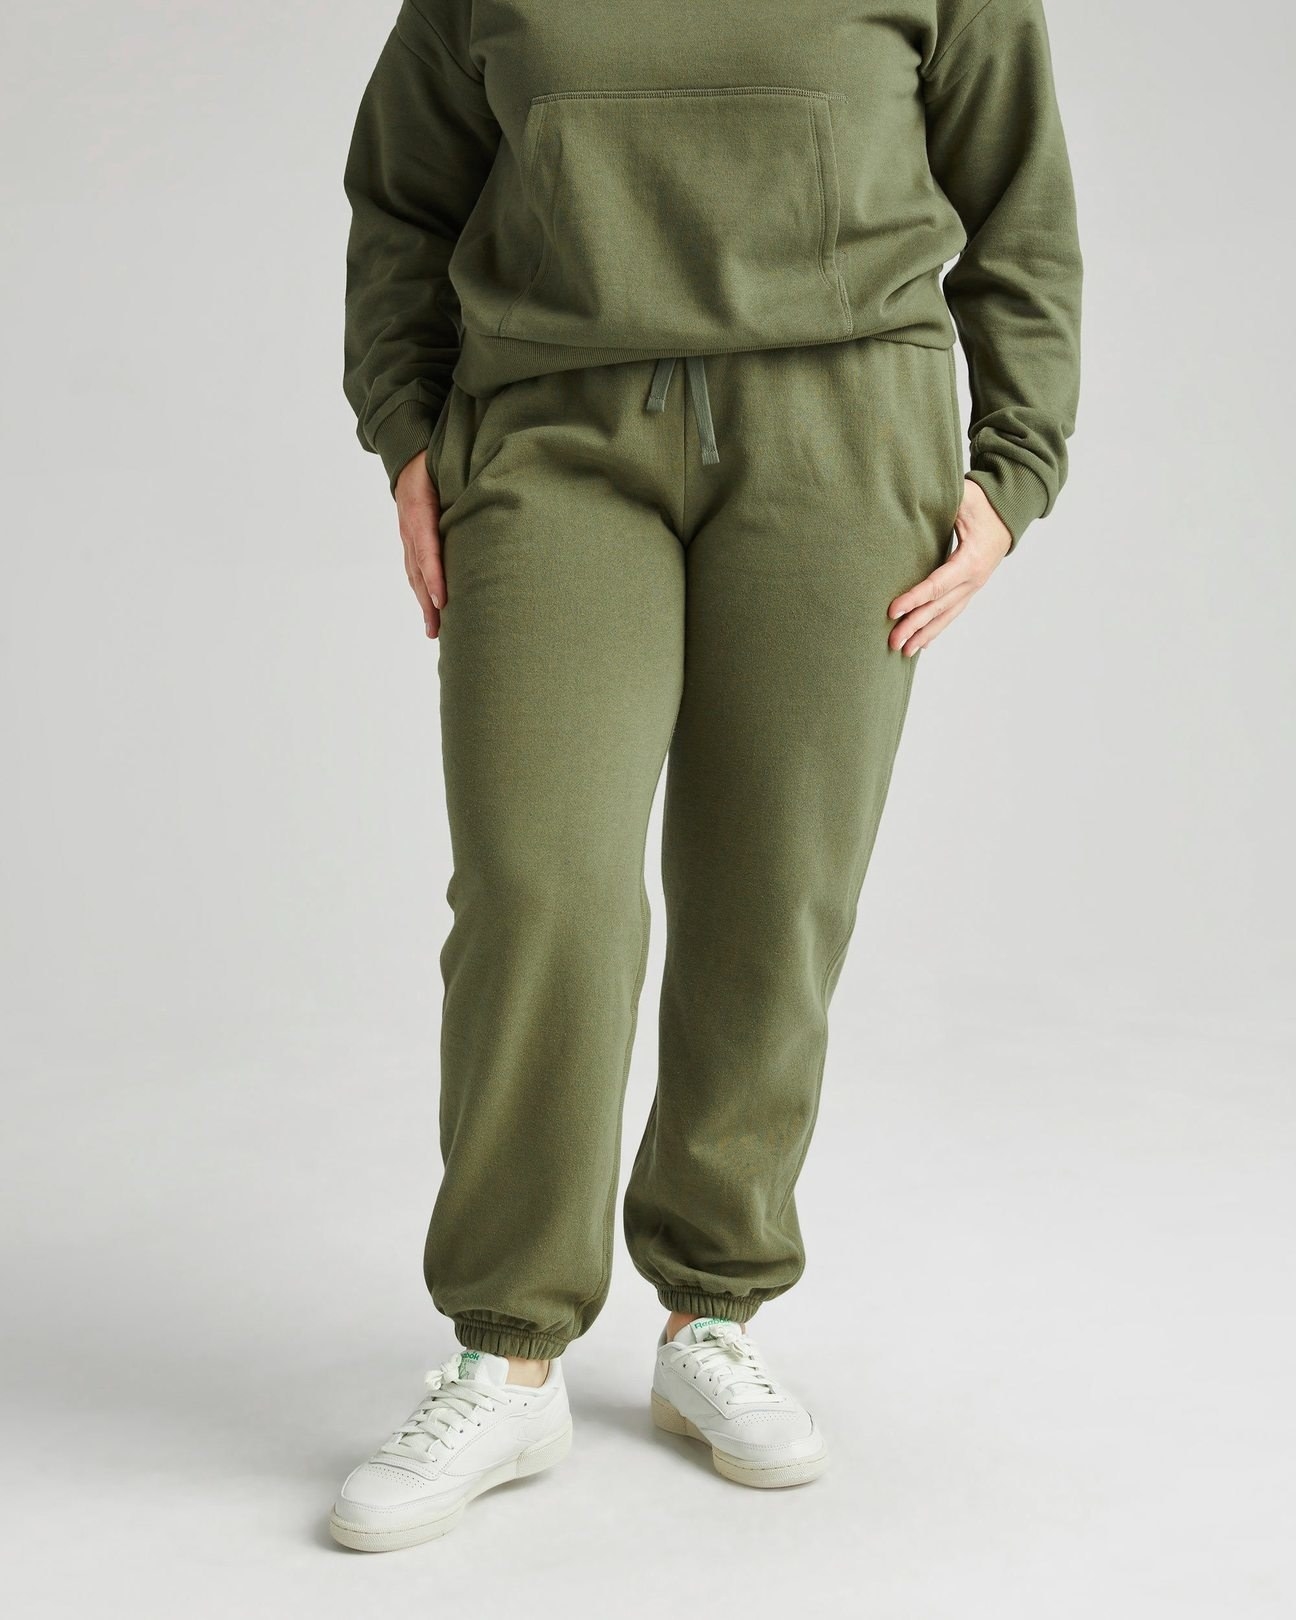 model wearing the green sweatpants